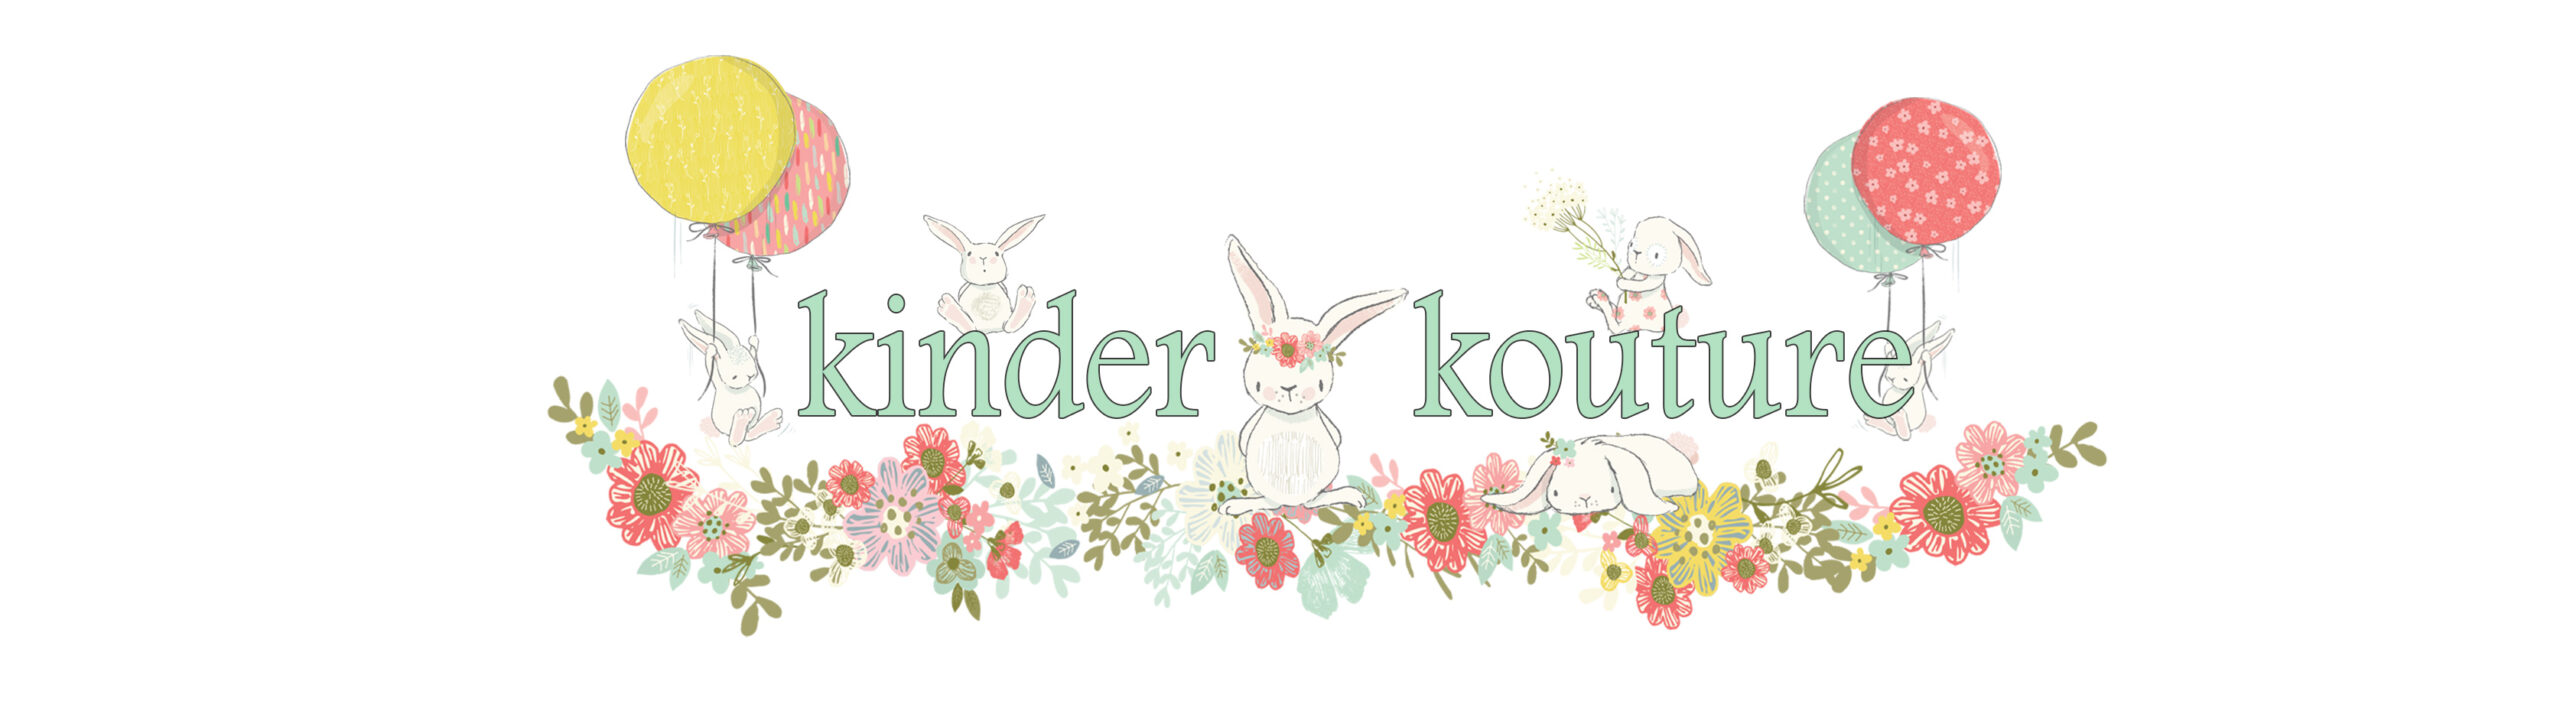 Easter Bunny Kinder Kouture Logo